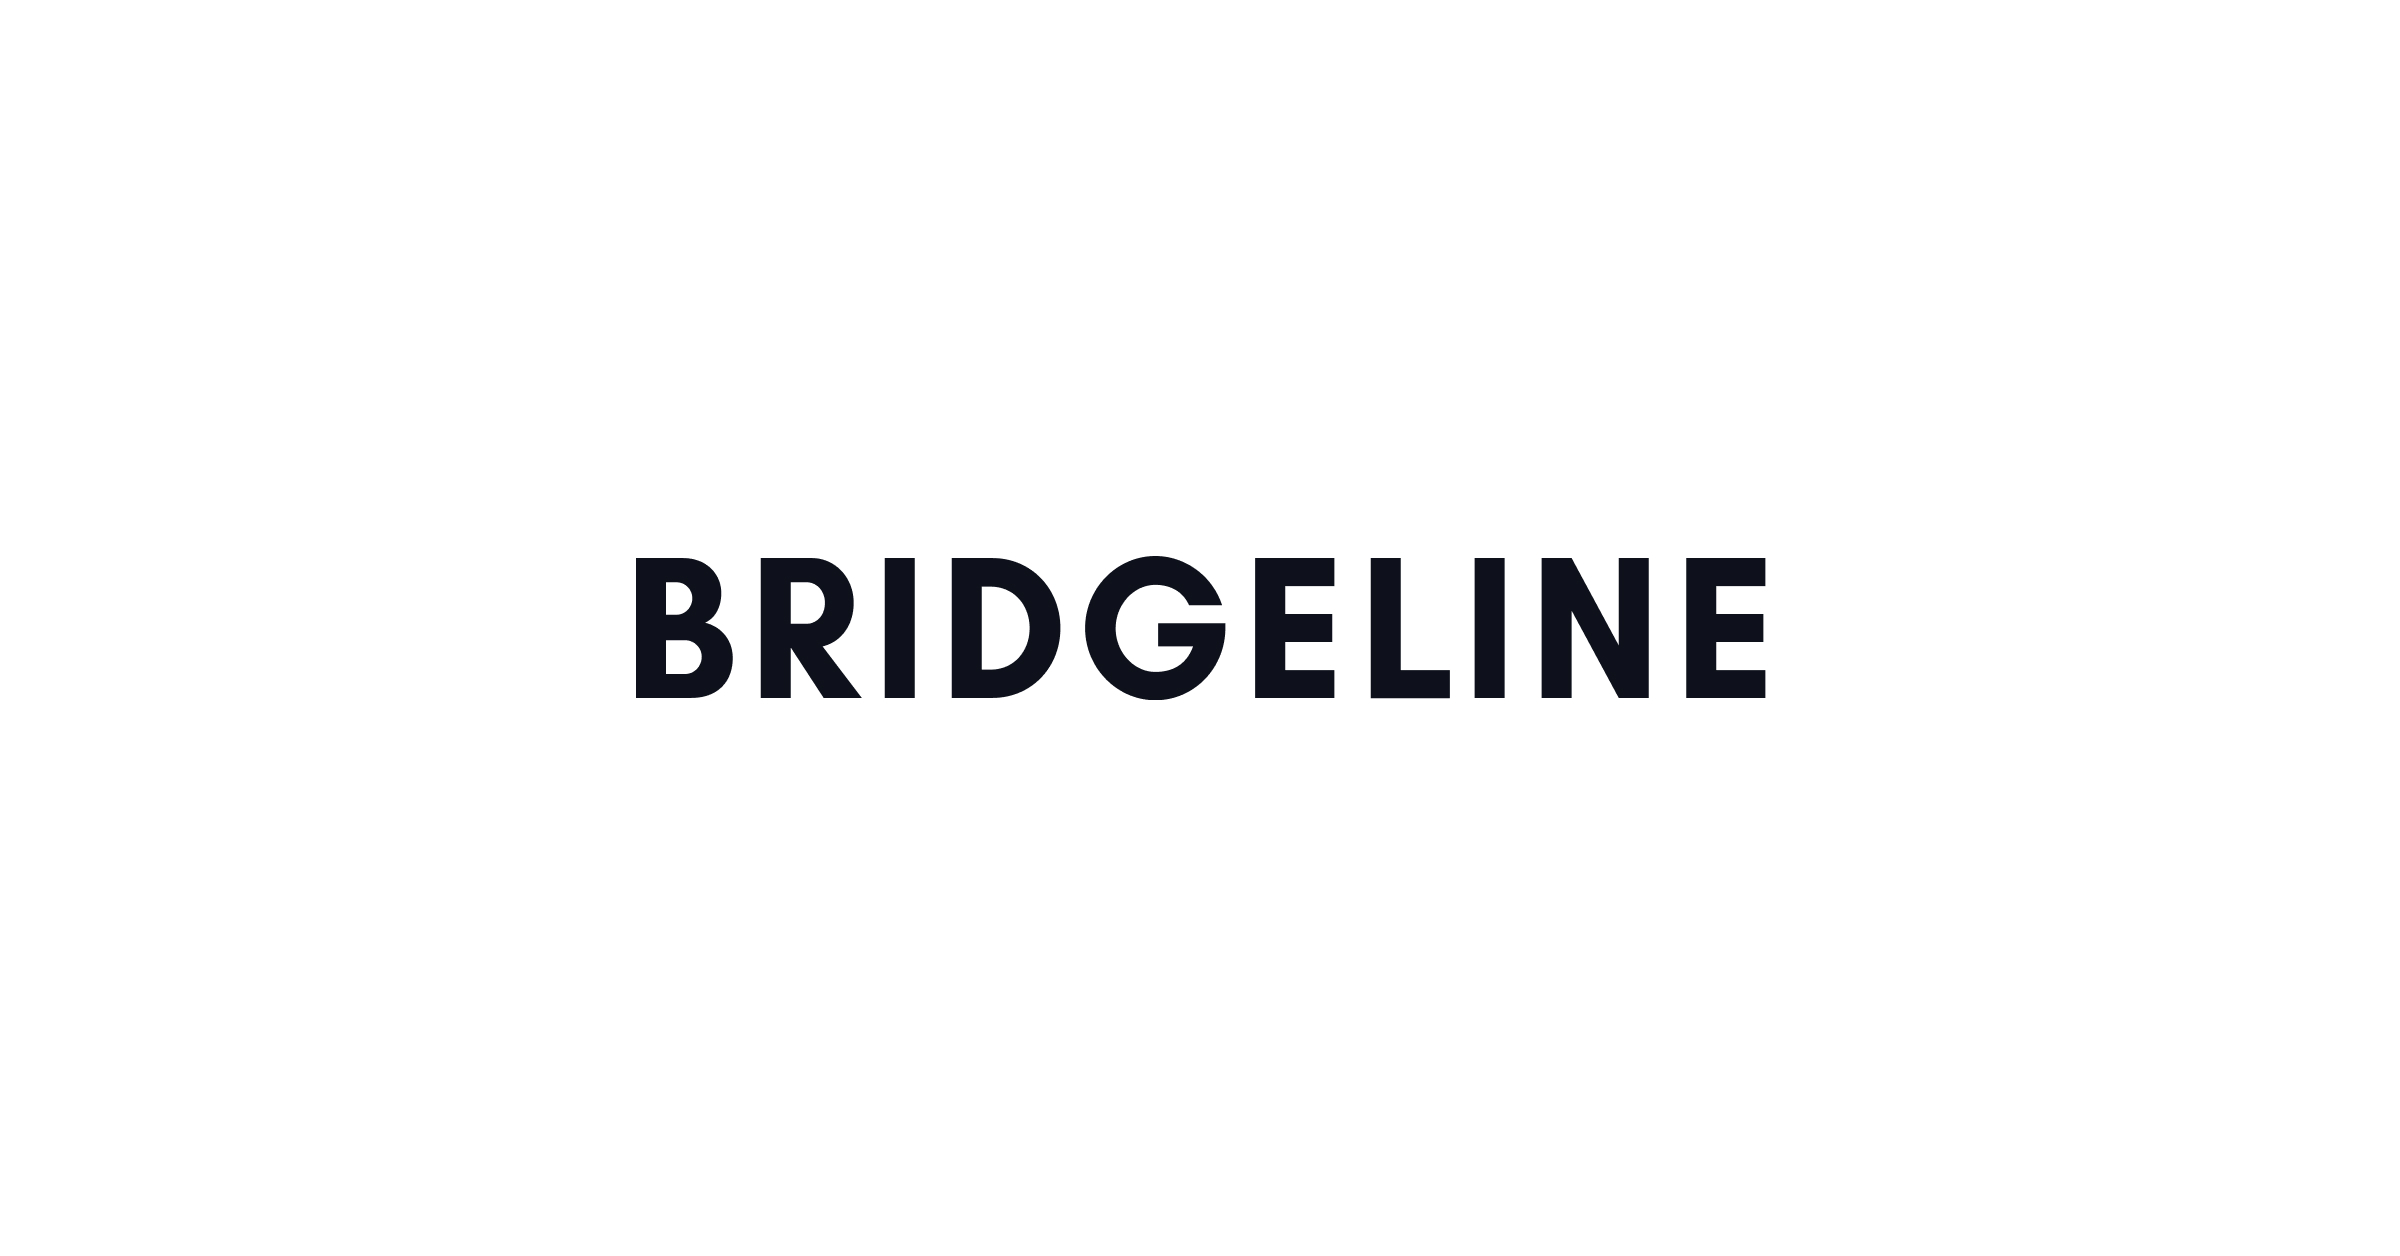 Bridgeline_Finance_Yahoo 1200x628 (2).jpg